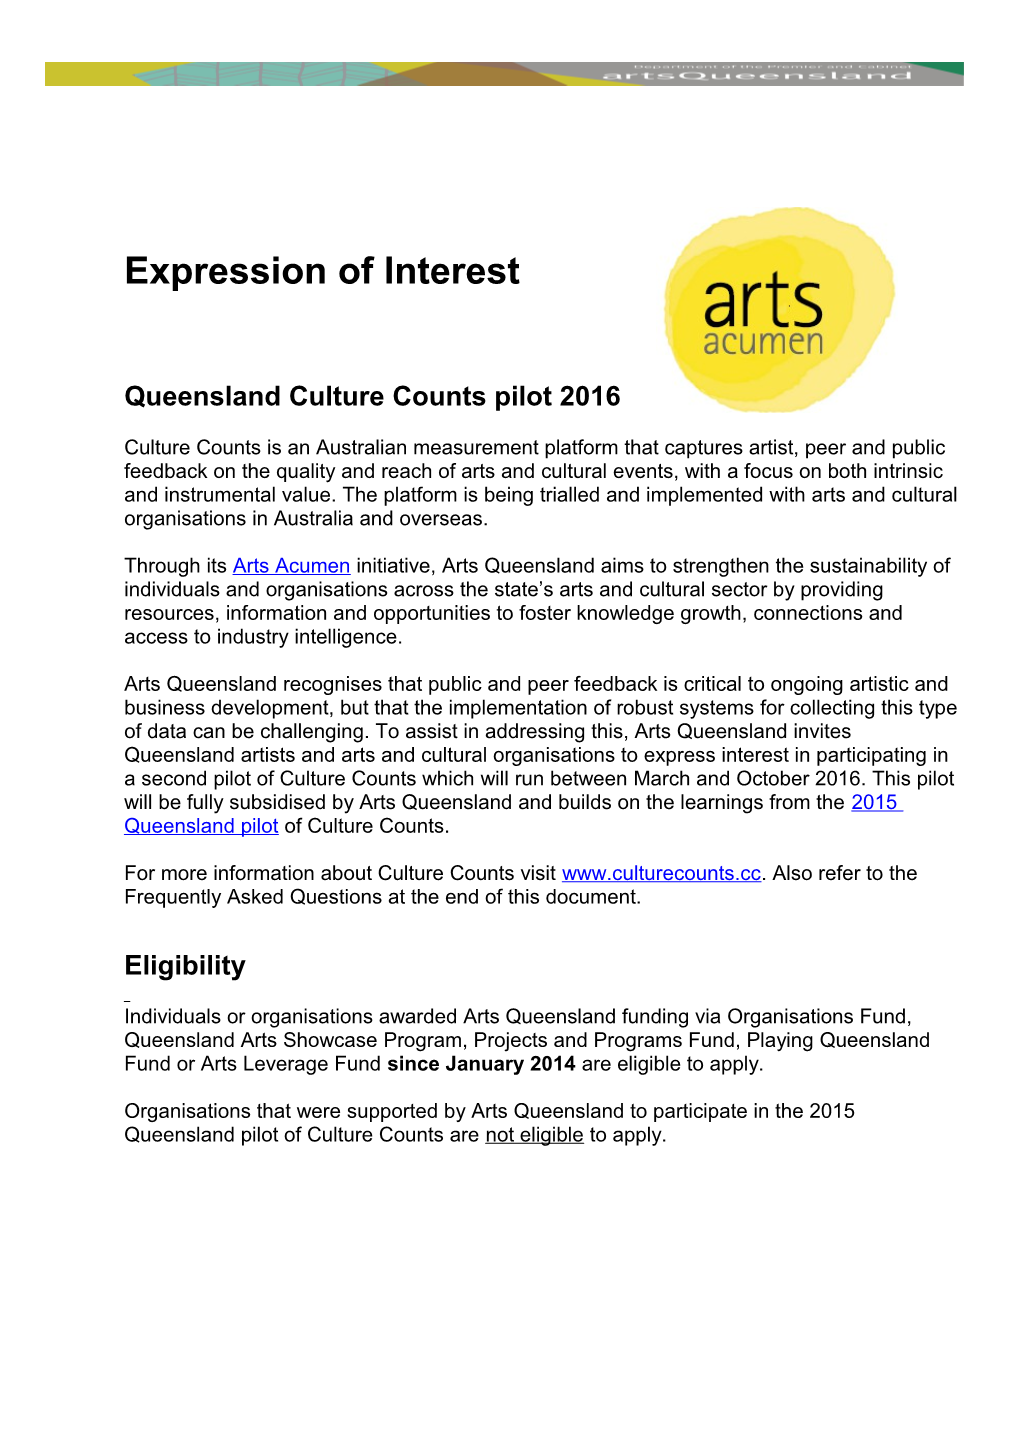 Queensland Culture Counts Pilot 2016